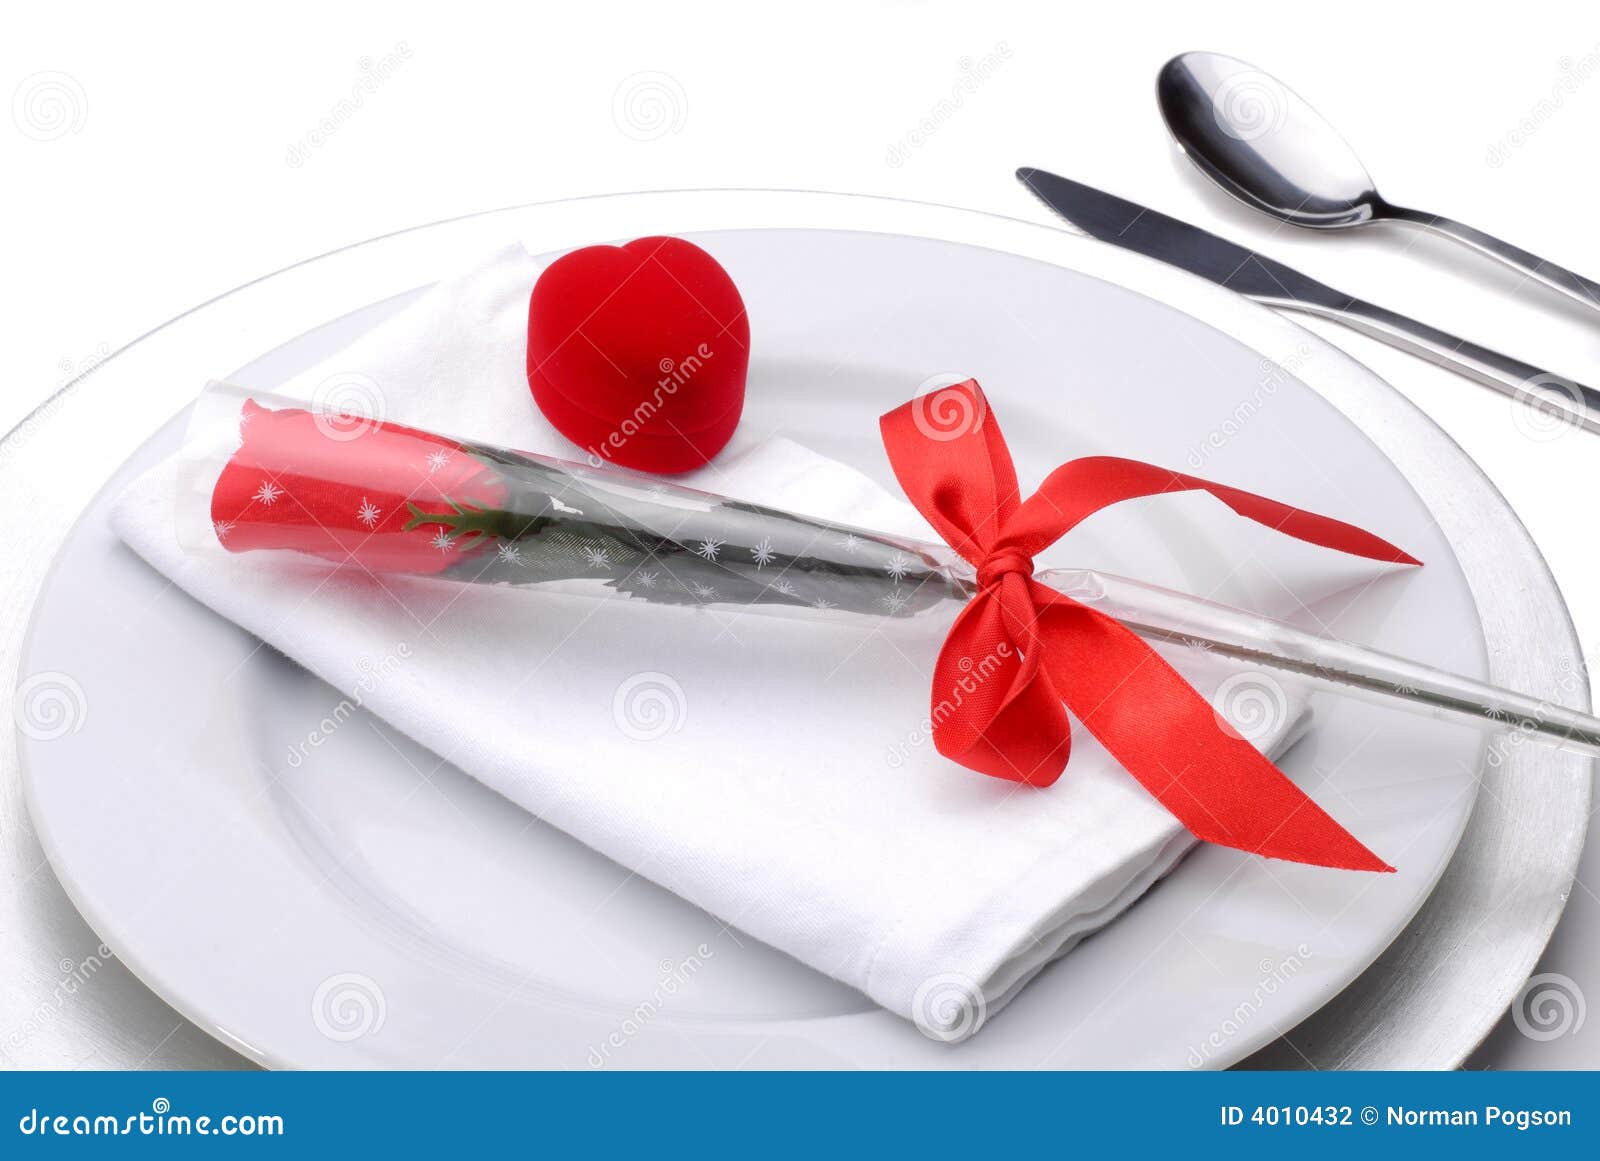 valentine dinner clipart - photo #17